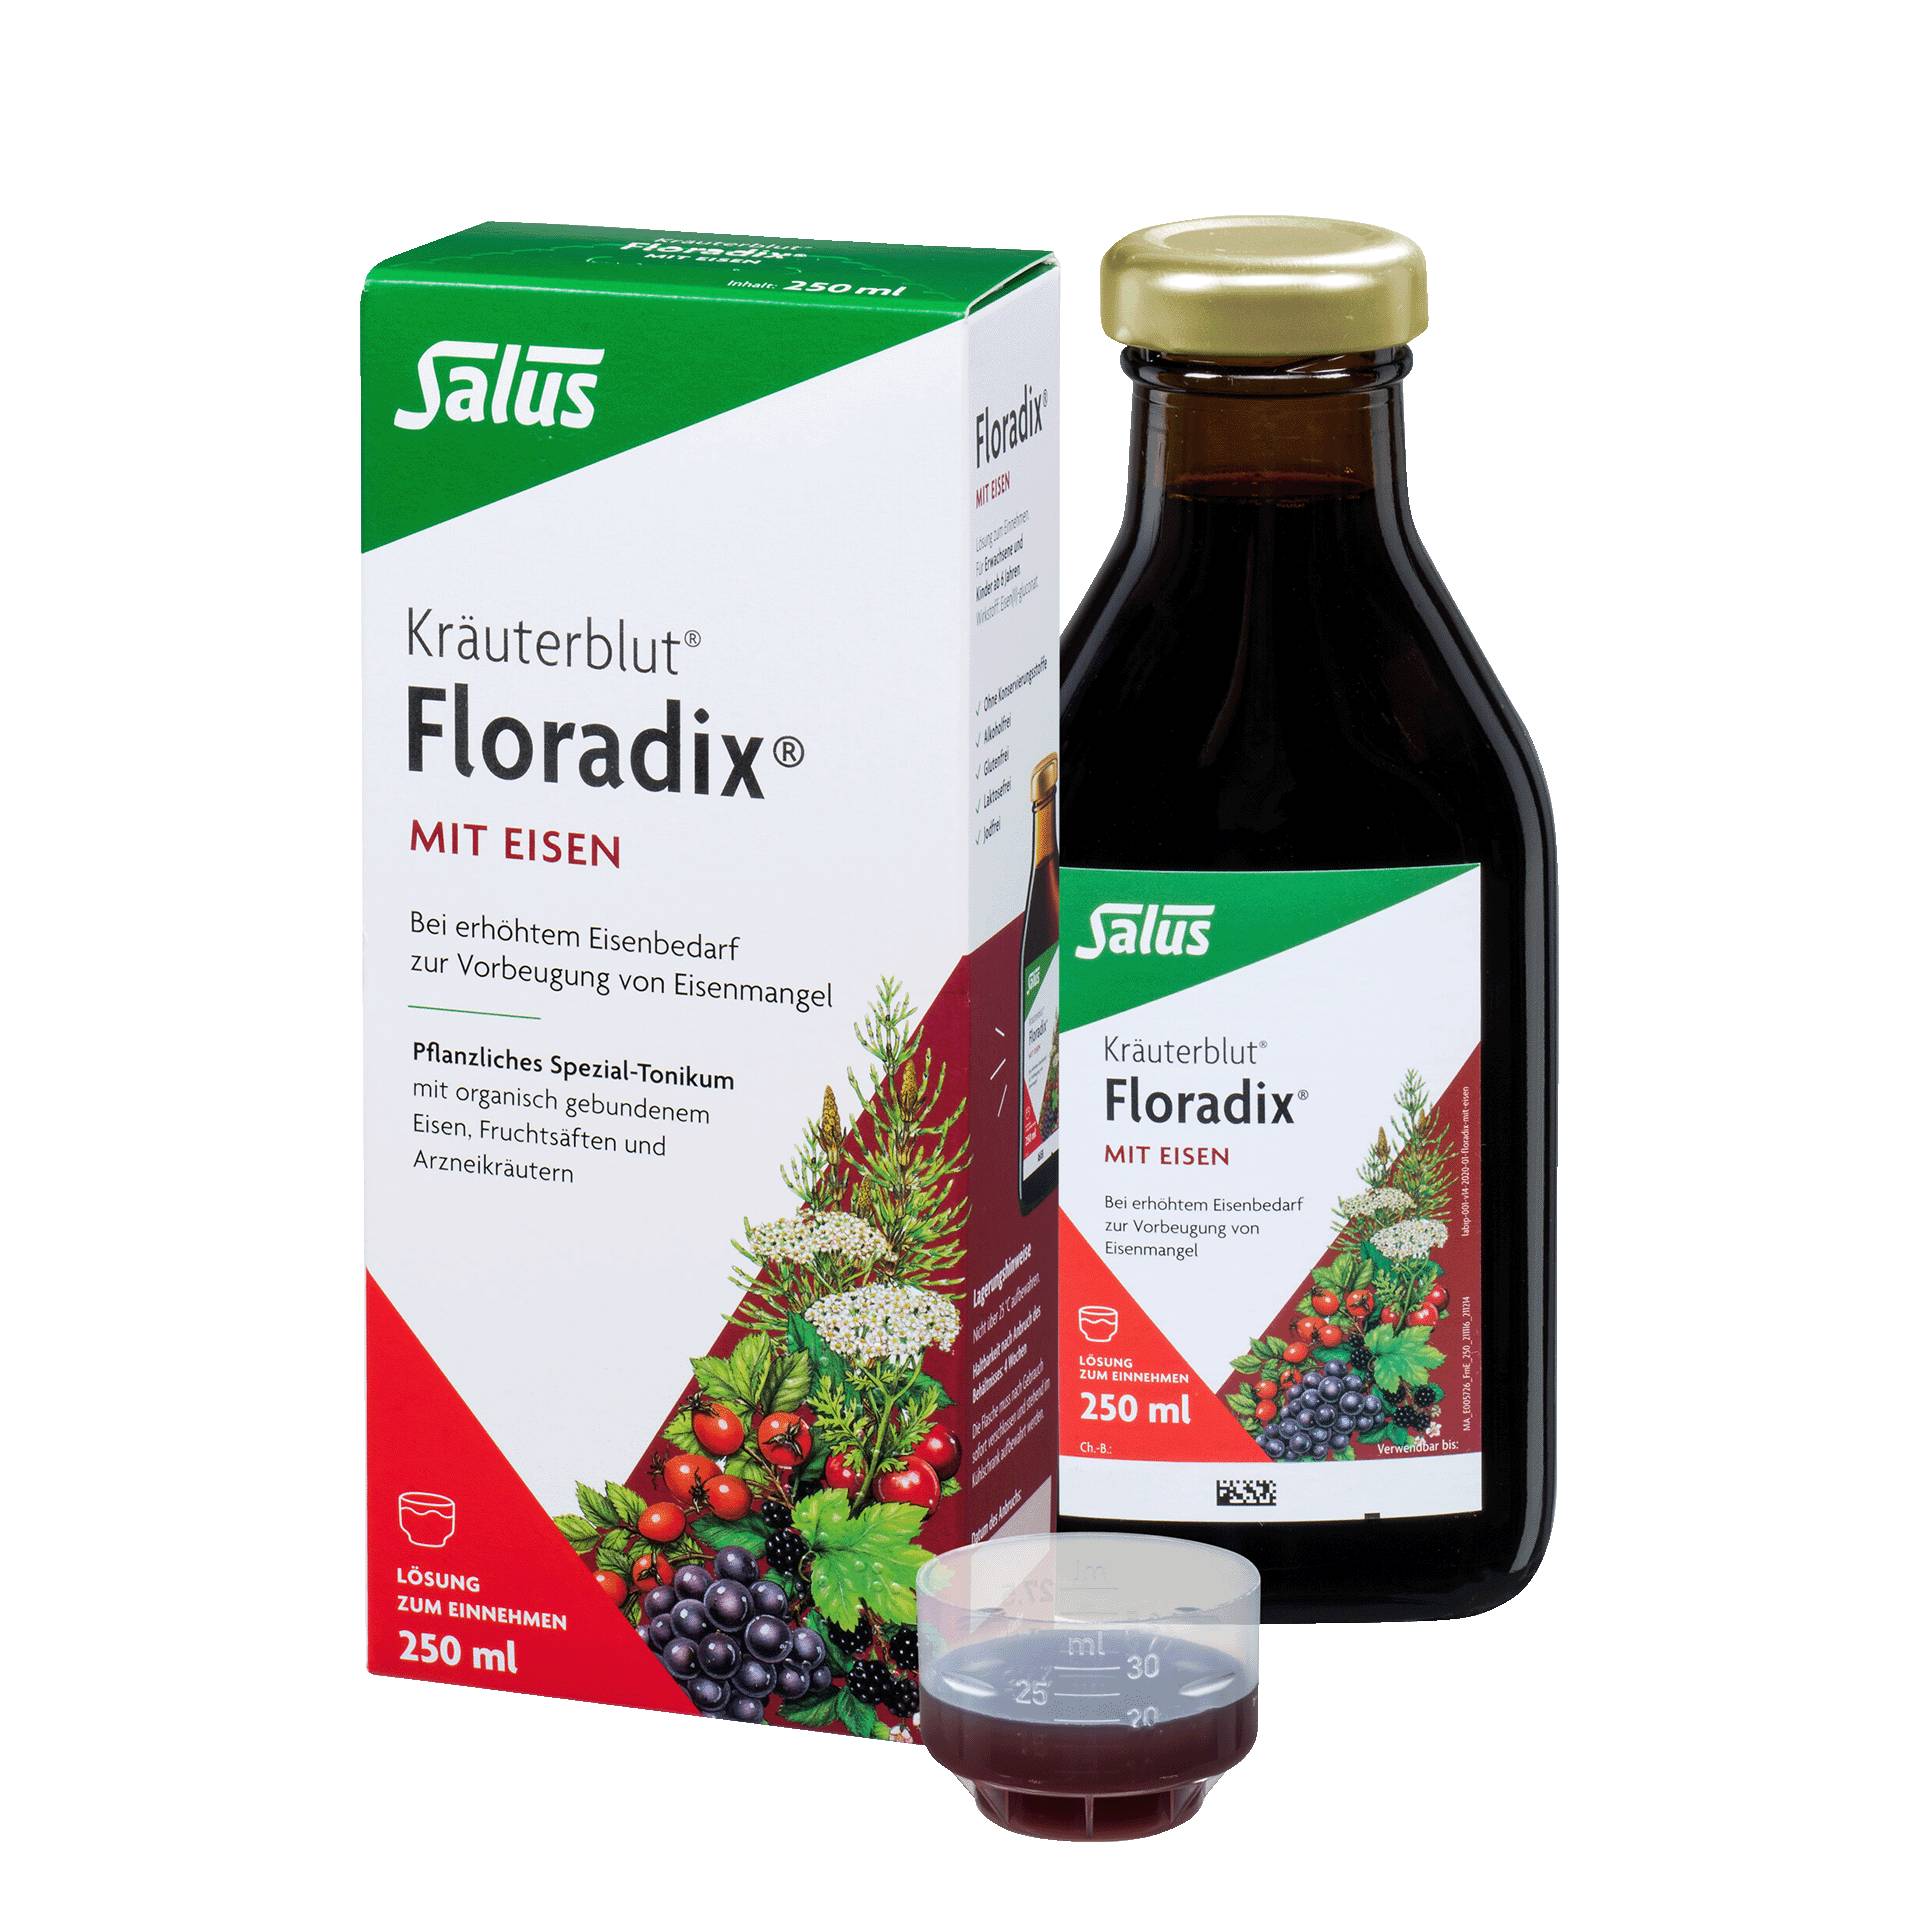 Kräuterblut Floradix mit Eisen, 250 ml von Salus